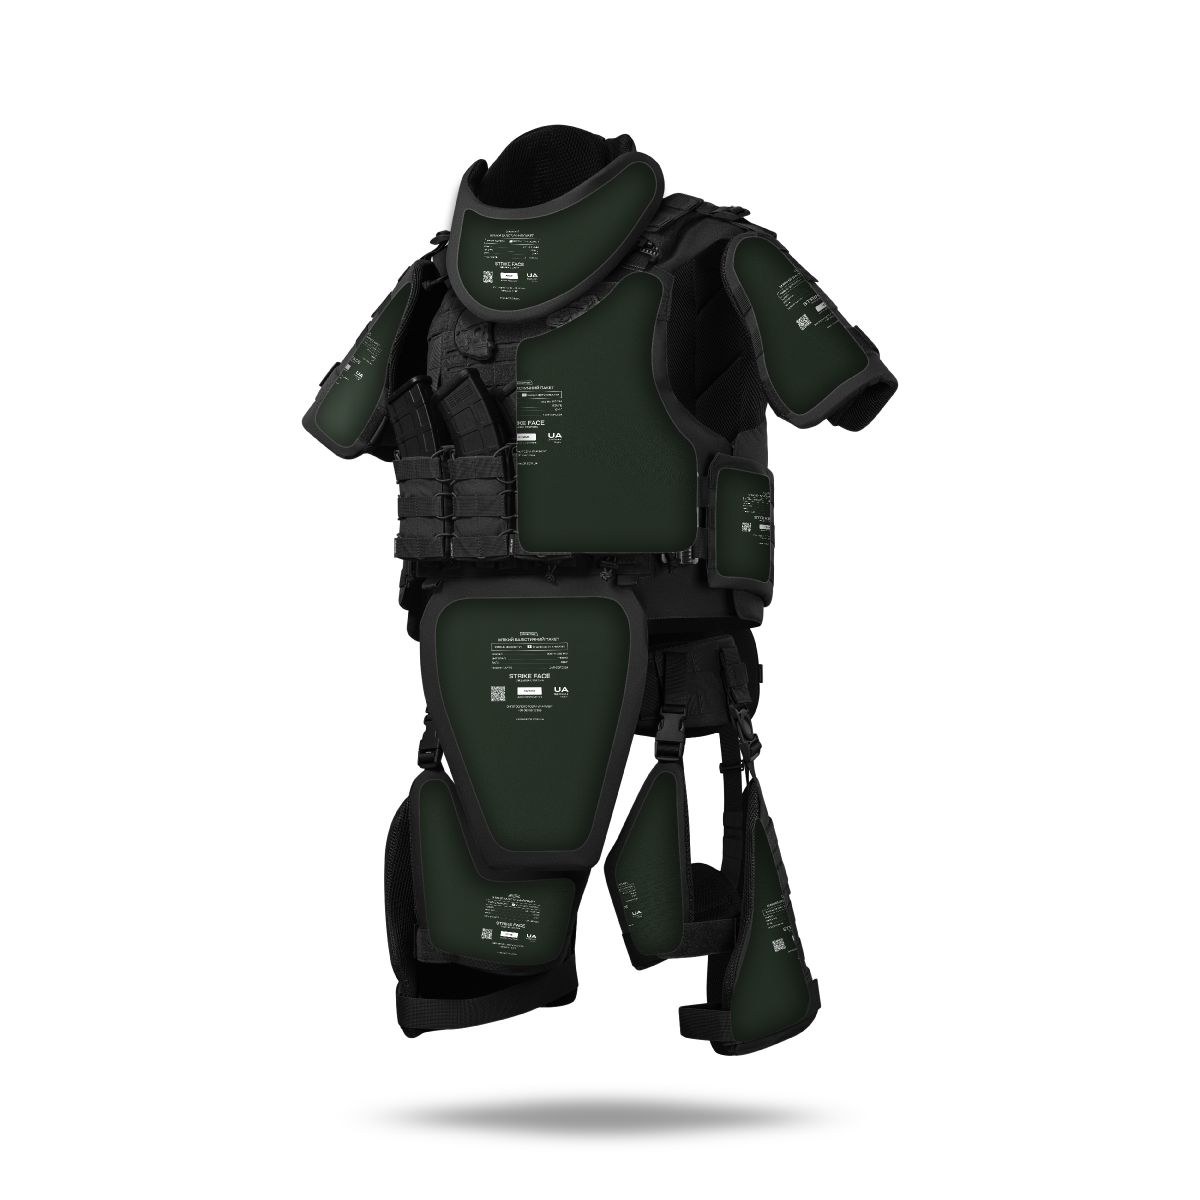 Бронекостюм A.T.A.S. (Advanced Tactical Armor Suit) Level I. Класс защиты – 1. Черный. S/M 2